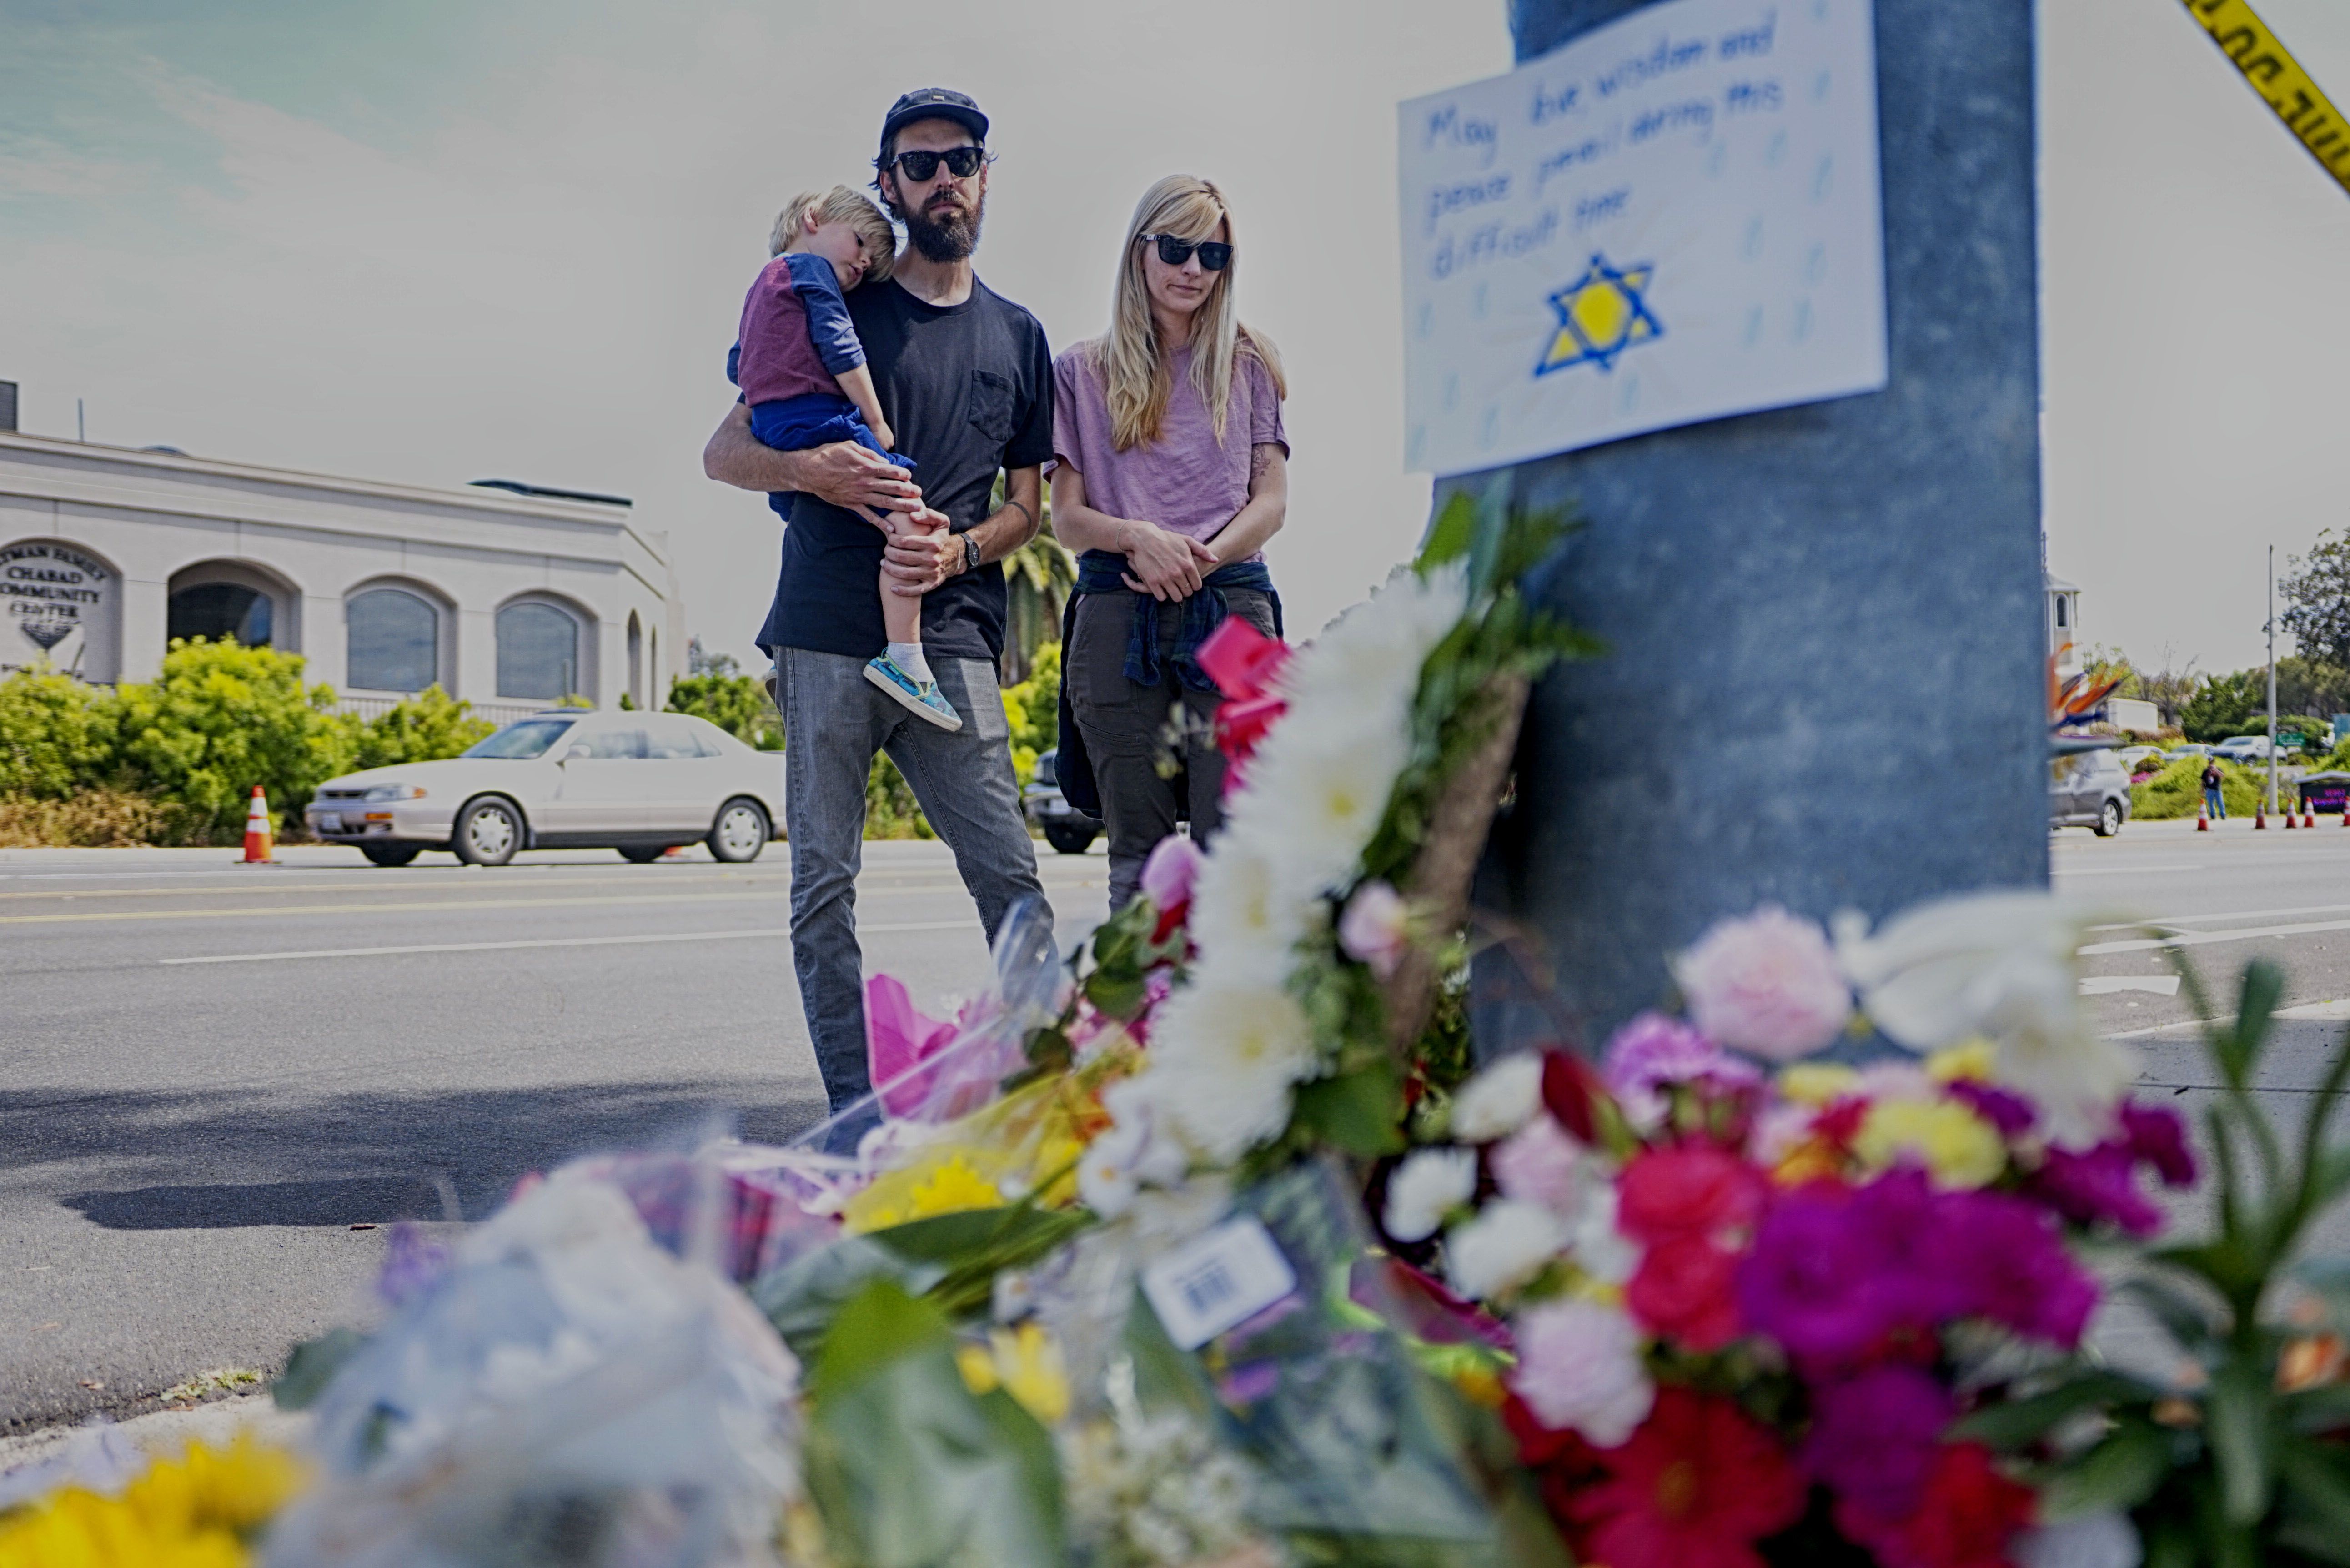 Una familia observa un memorial improvisado al otro lado de la calle de la Sinagoga Chabad de Poway, California, un día después de que un hombre armado disparara y matara a una e hiriera a tres. (Foto Prensa Libre: AFP).

